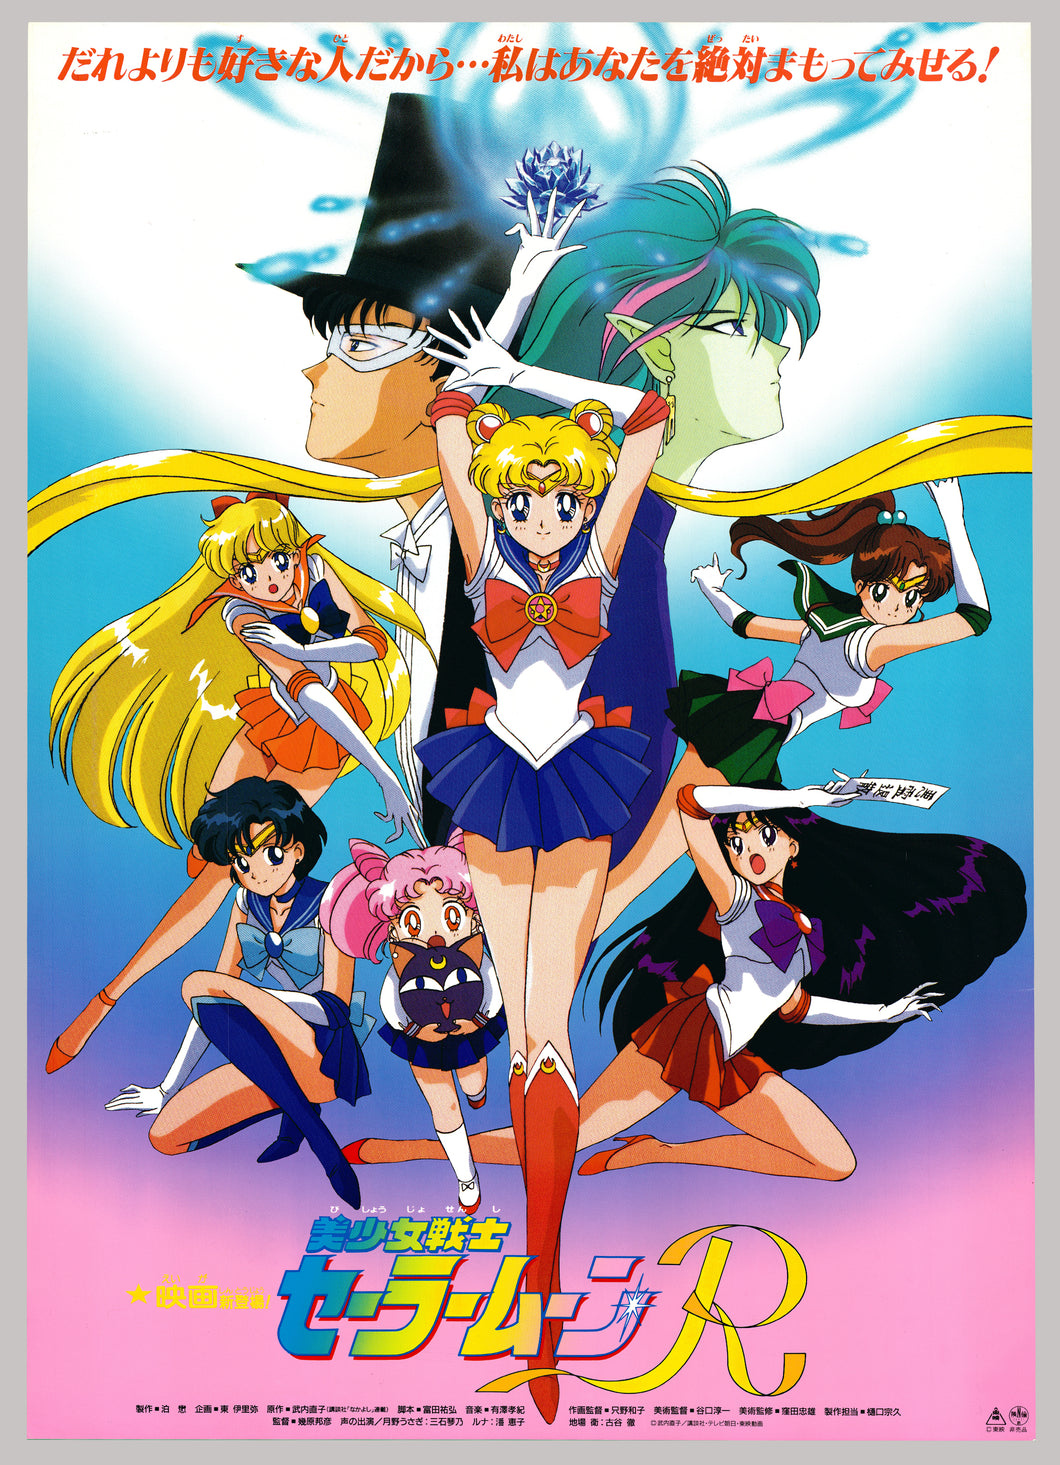 Original Sailor Moon R Anime Poster Cel Ga Com